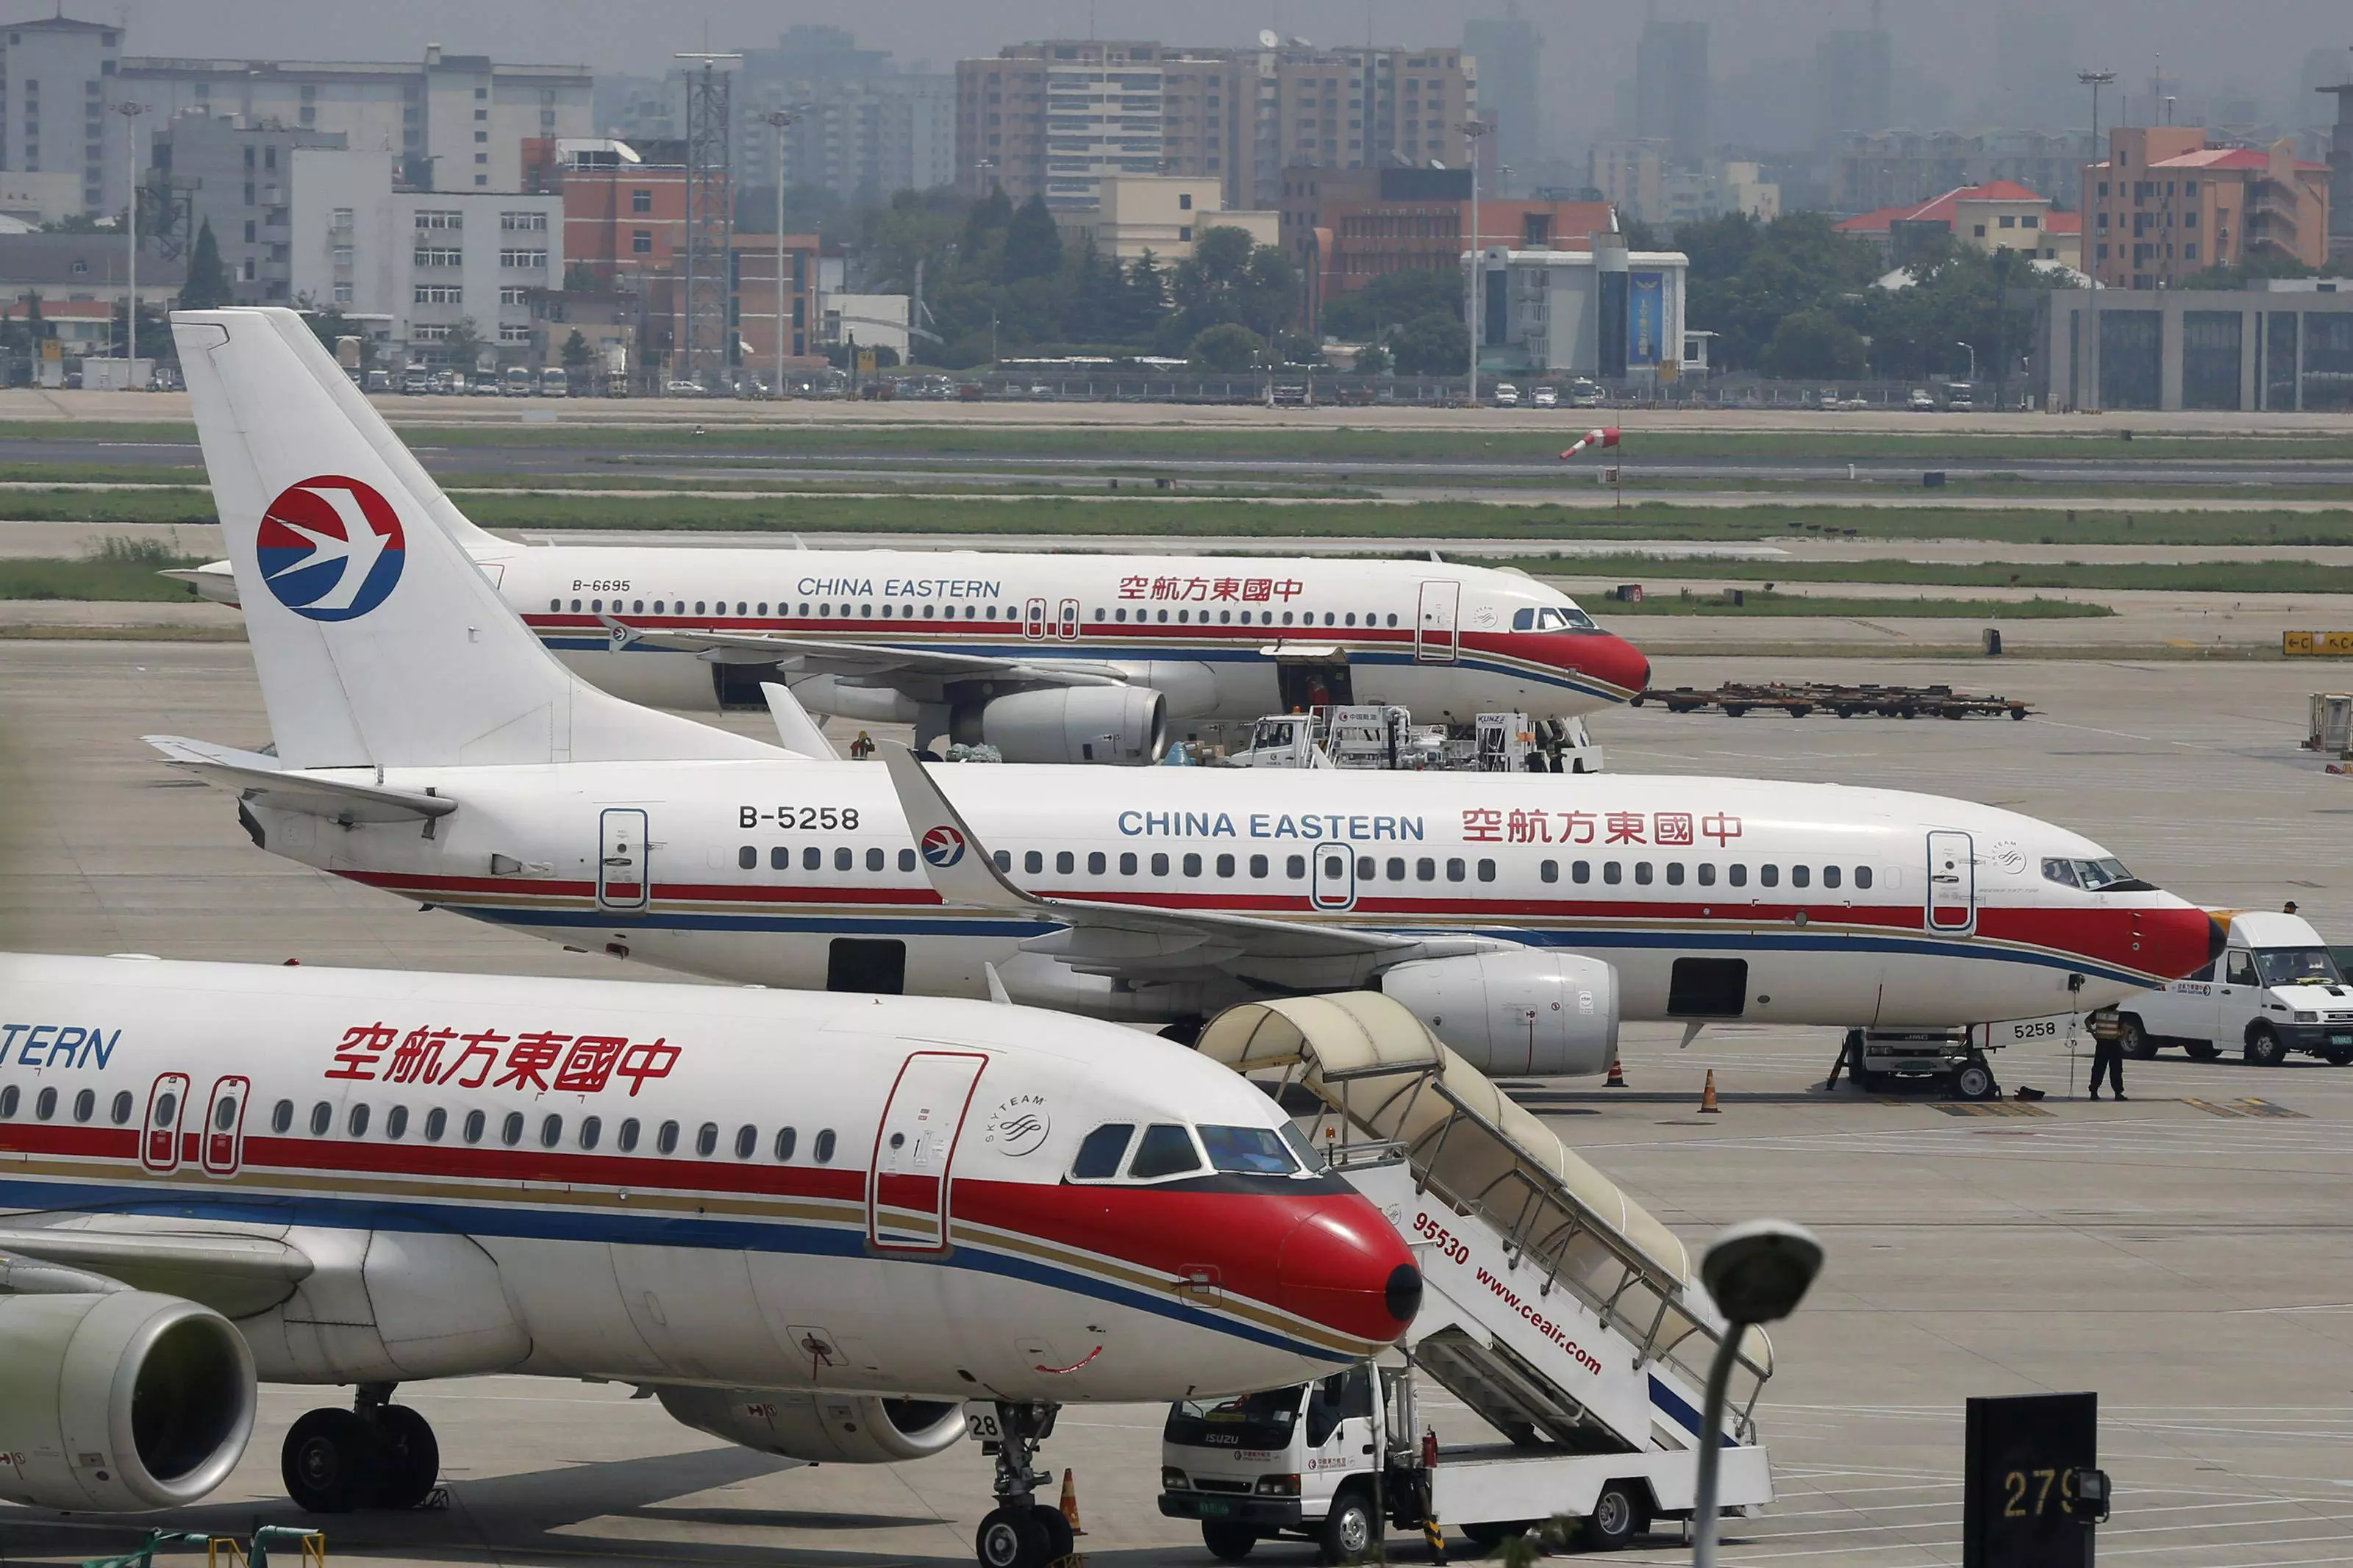 Китайские южные авиалинии авиакомпания - официальный сайт china southern airlines, контакты, авиабилеты и расписание рейсов 2022